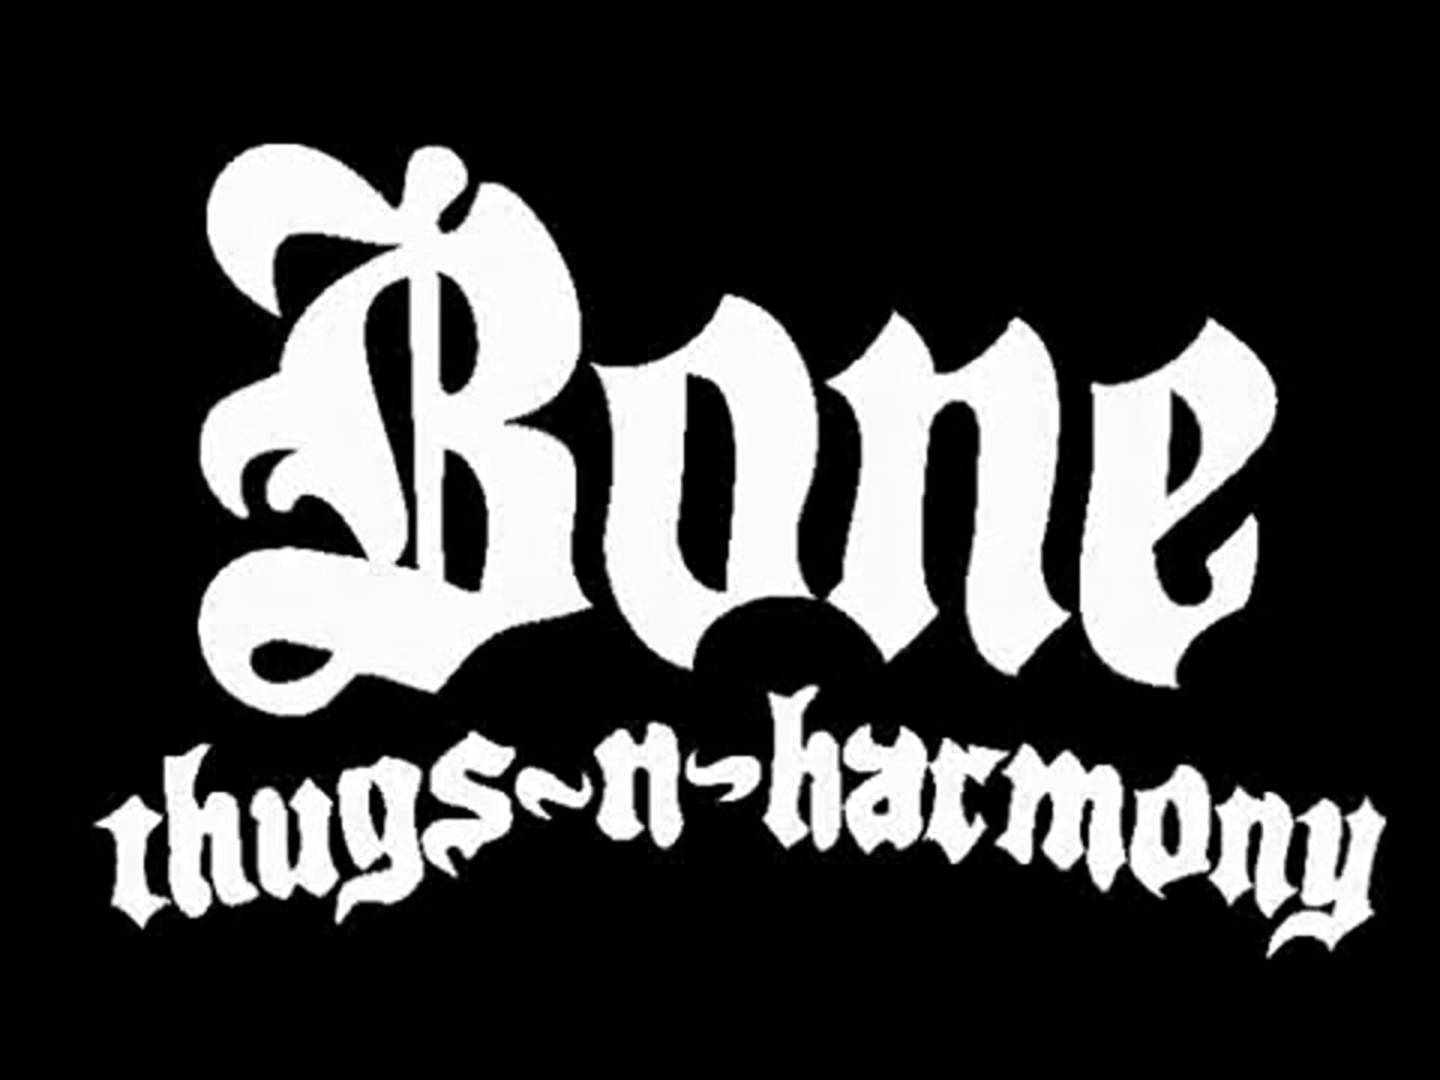 Bone thugs harmony. Bone Thugs-n-Harmony. Thugs. Фото Bone Thug n Harmony. Bone Thugs & Harmony BTNHRESSURECTION.